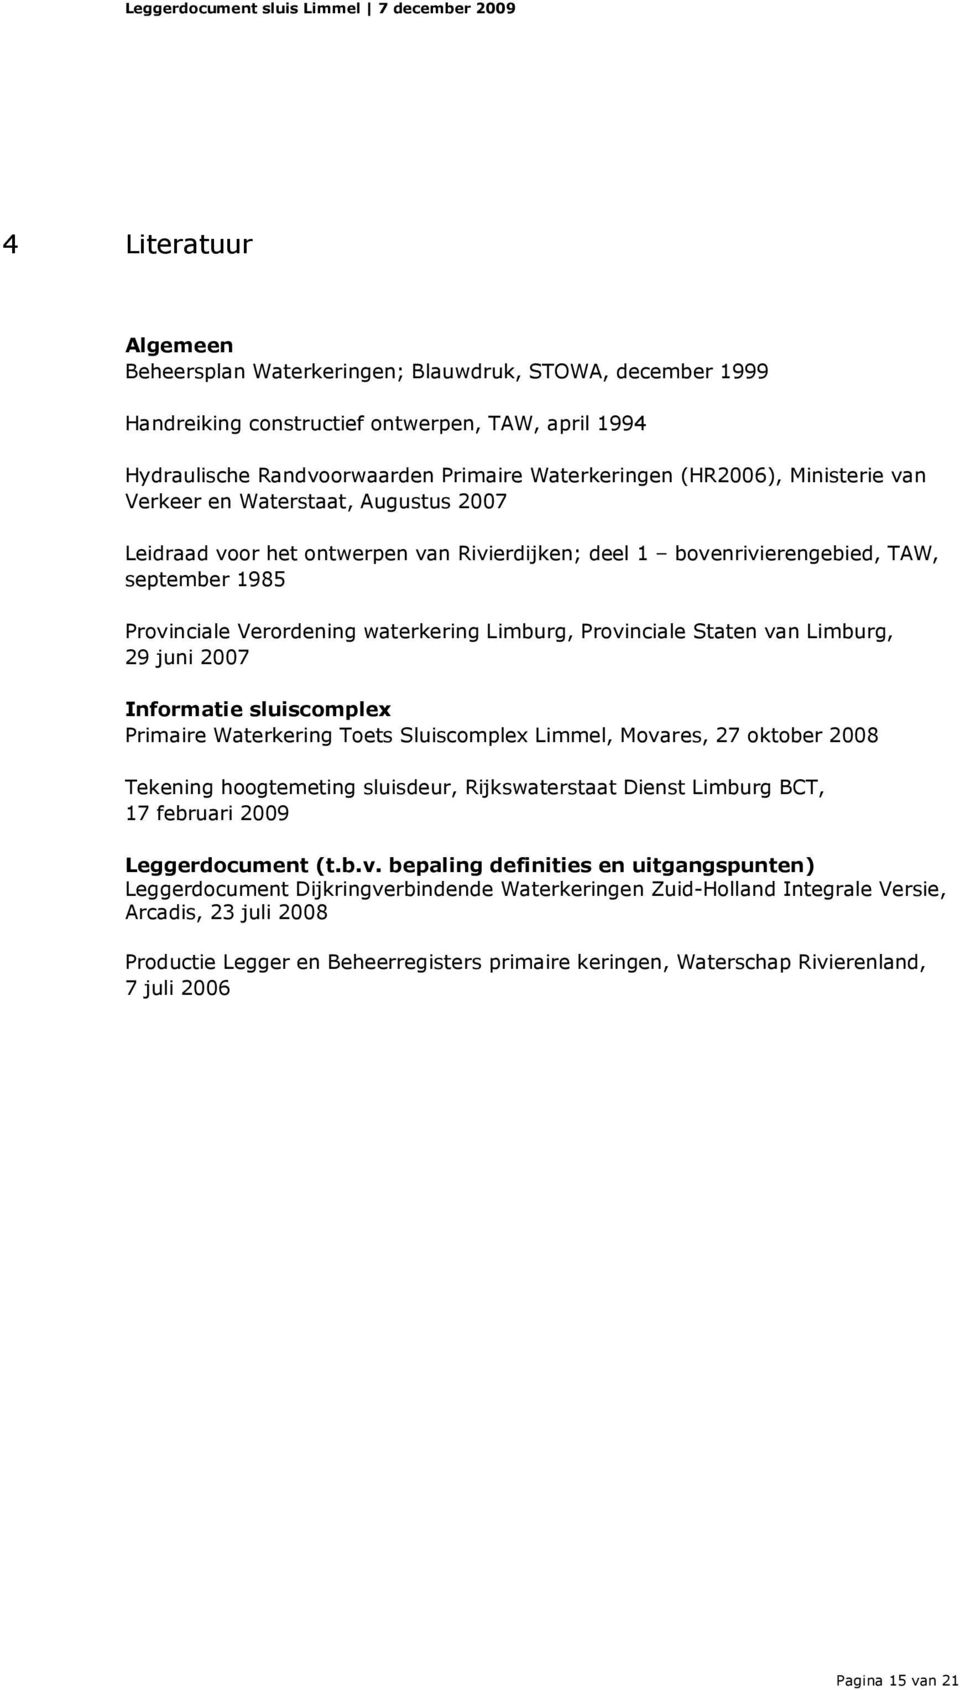 Provinciale Staten van Limburg, 29 juni 2007 Informatie sluiscomplex Primaire Waterkering Toets Sluiscomplex Limmel, Movares, 27 oktober 2008 Tekening hoogtemeting sluisdeur, Rijkswaterstaat Dienst